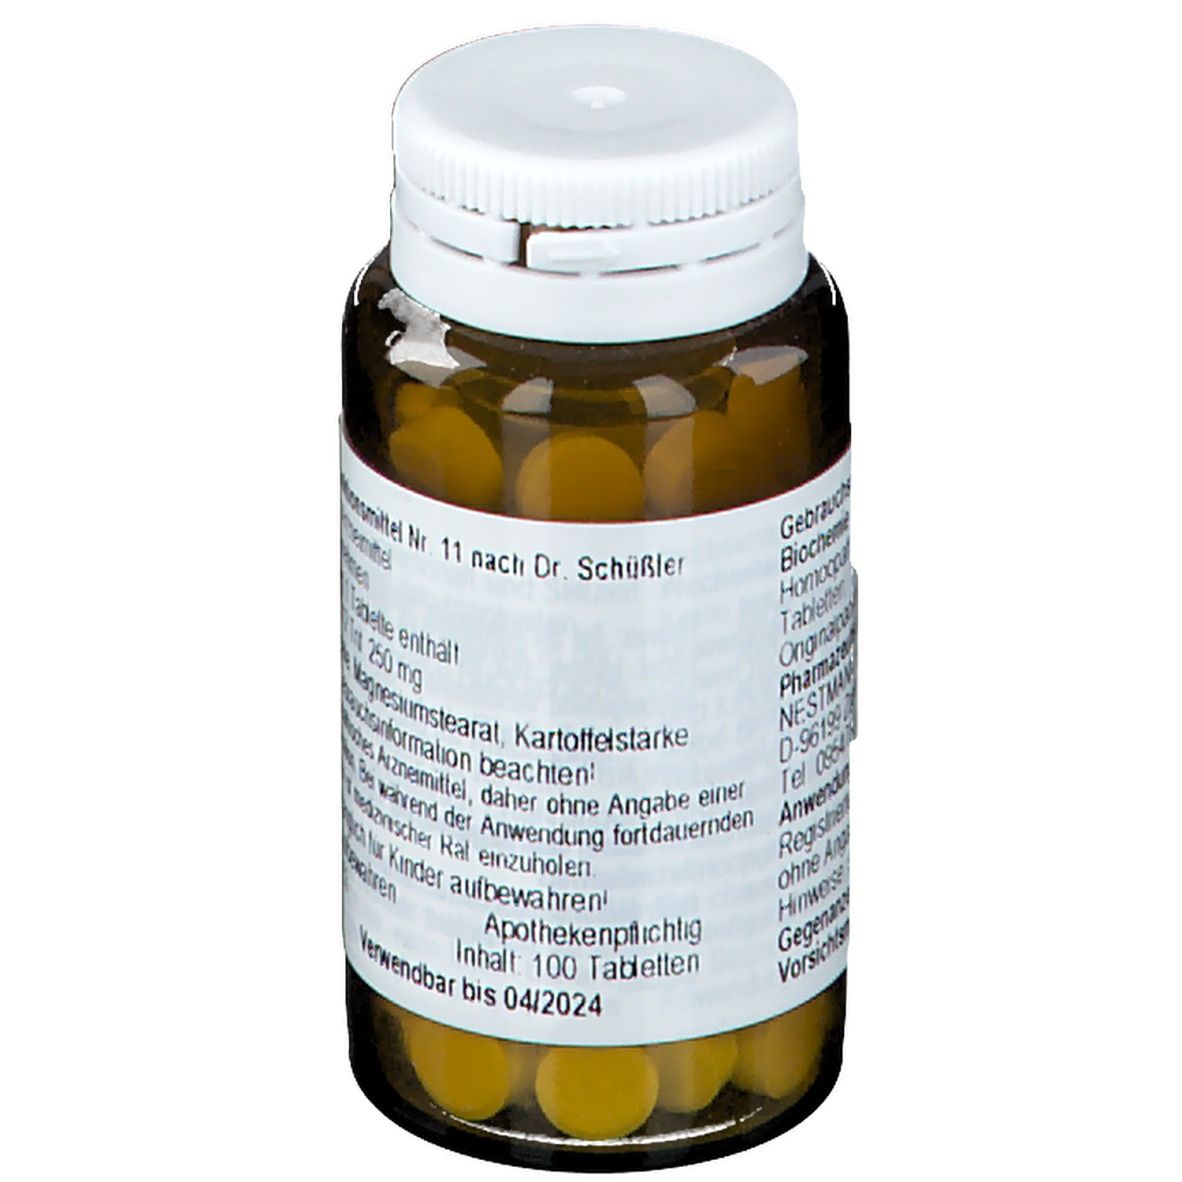 Biochemie 11 Silicea D12 Tabletten